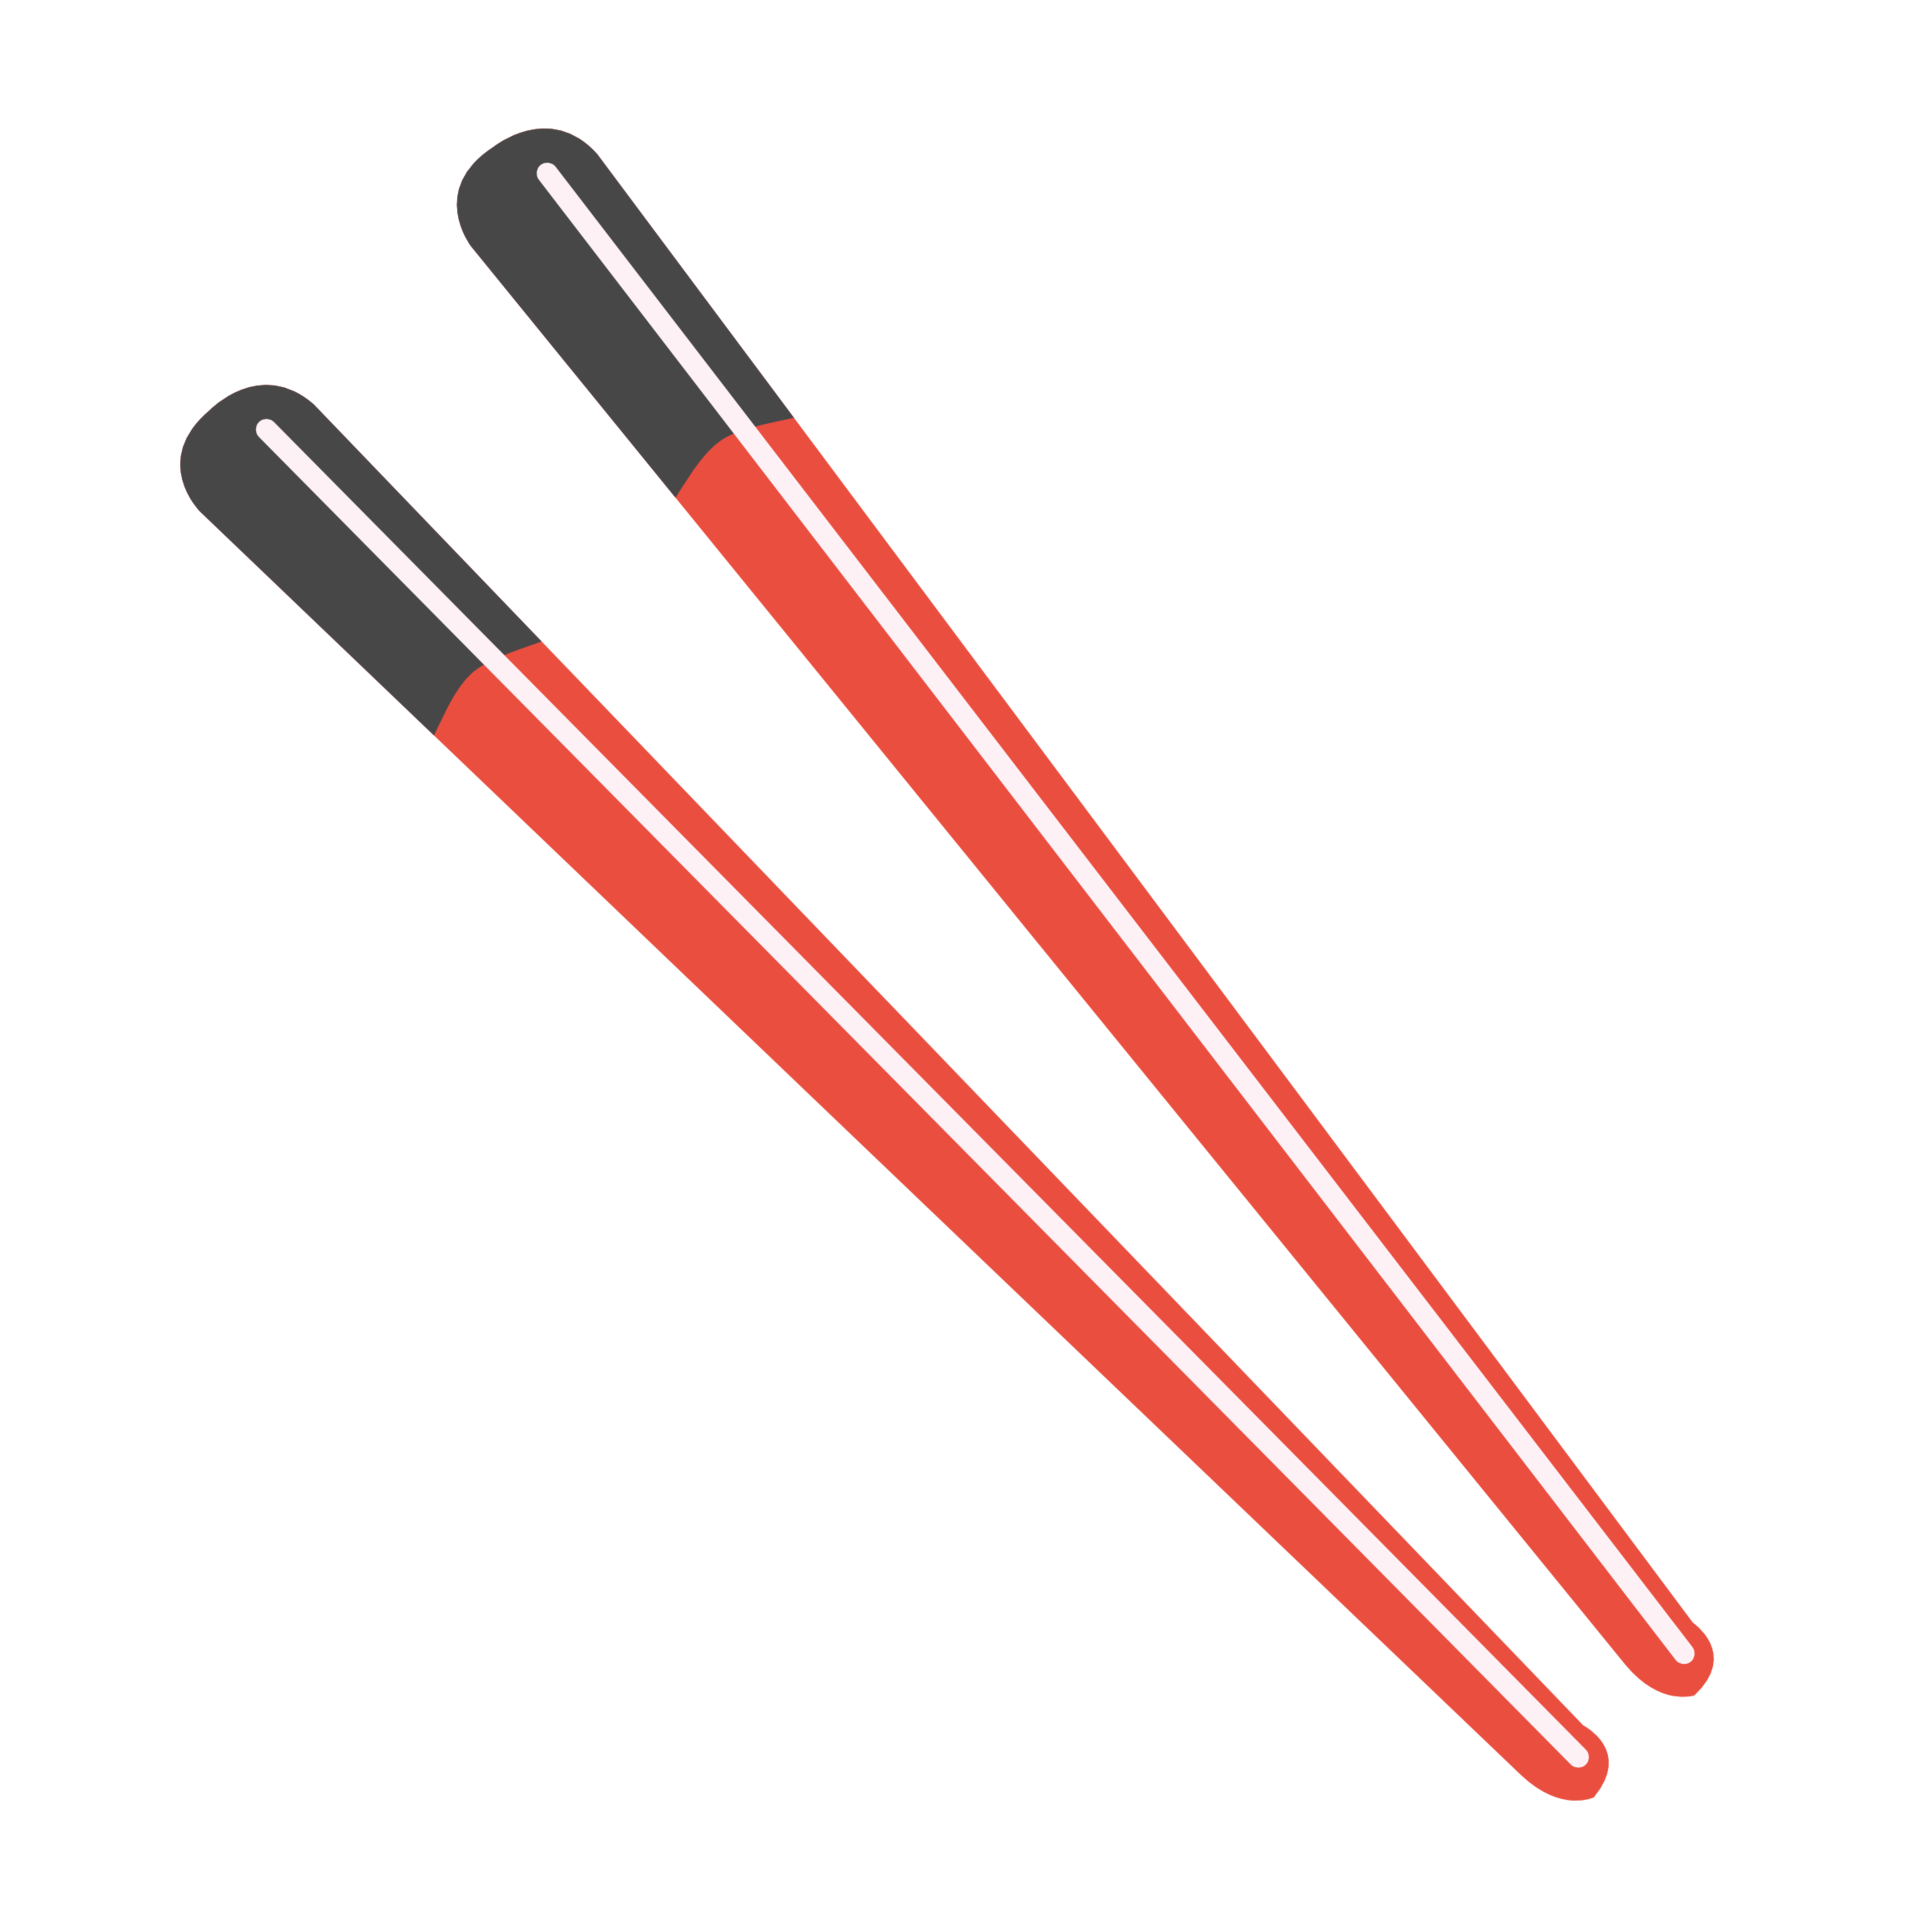 Chopsticks PNG Image File